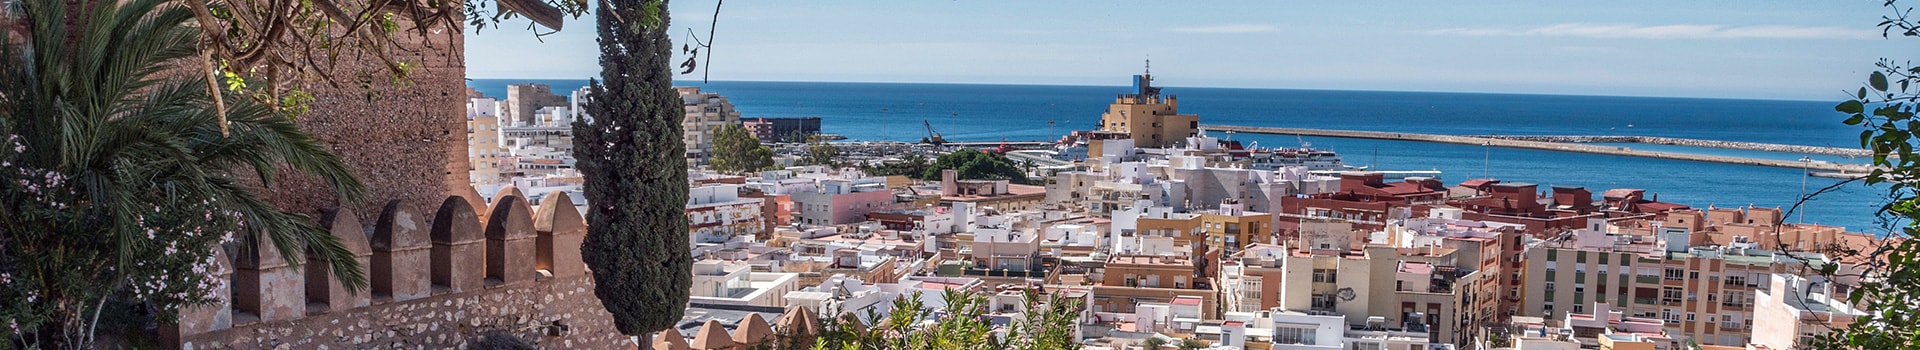 Siviglia - Almería